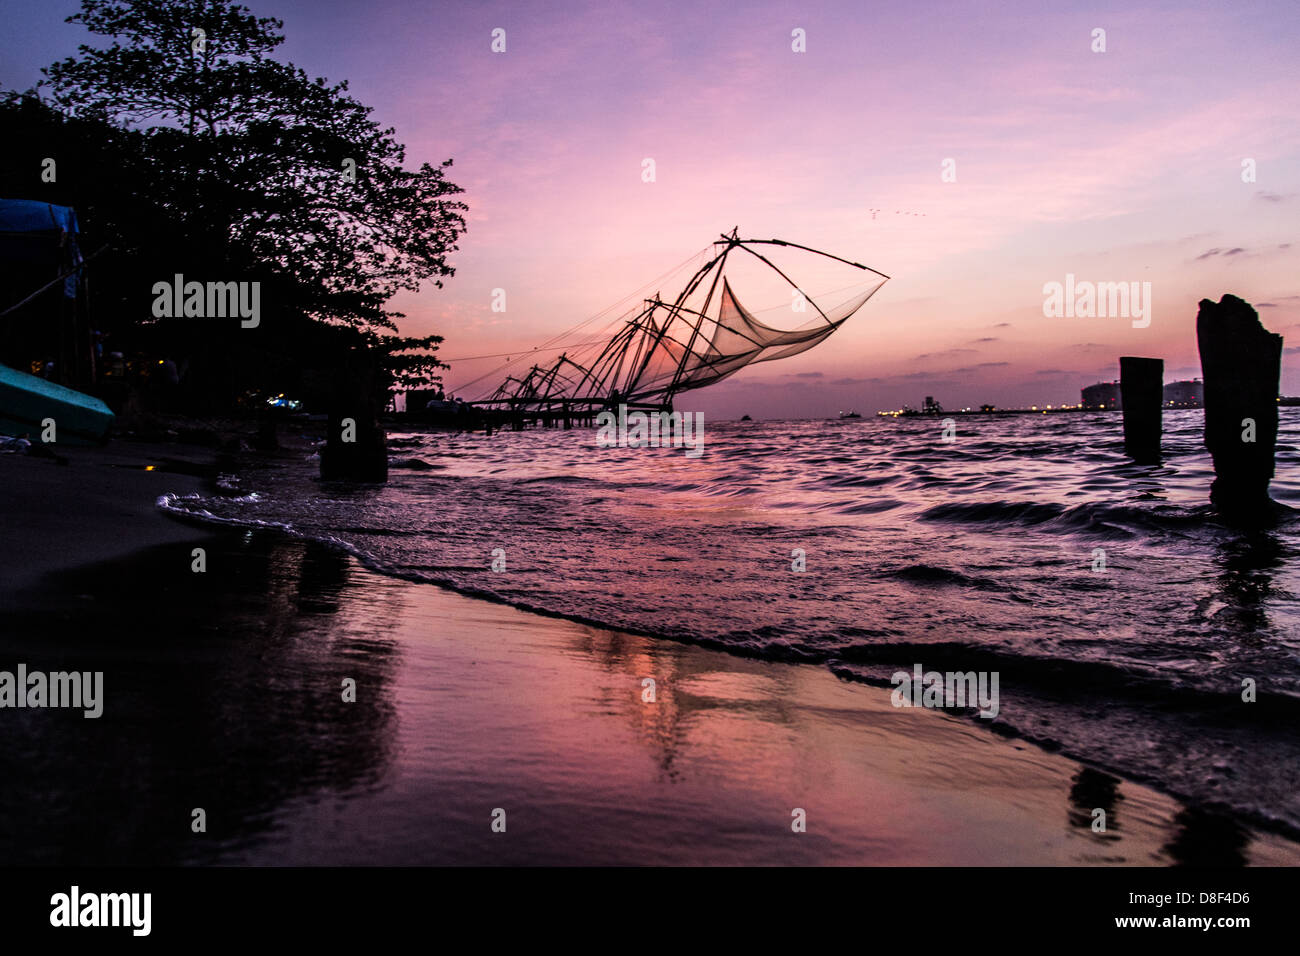 Cinese tradizionale delle reti da pesca, Kochi, Kerela, India Foto Stock